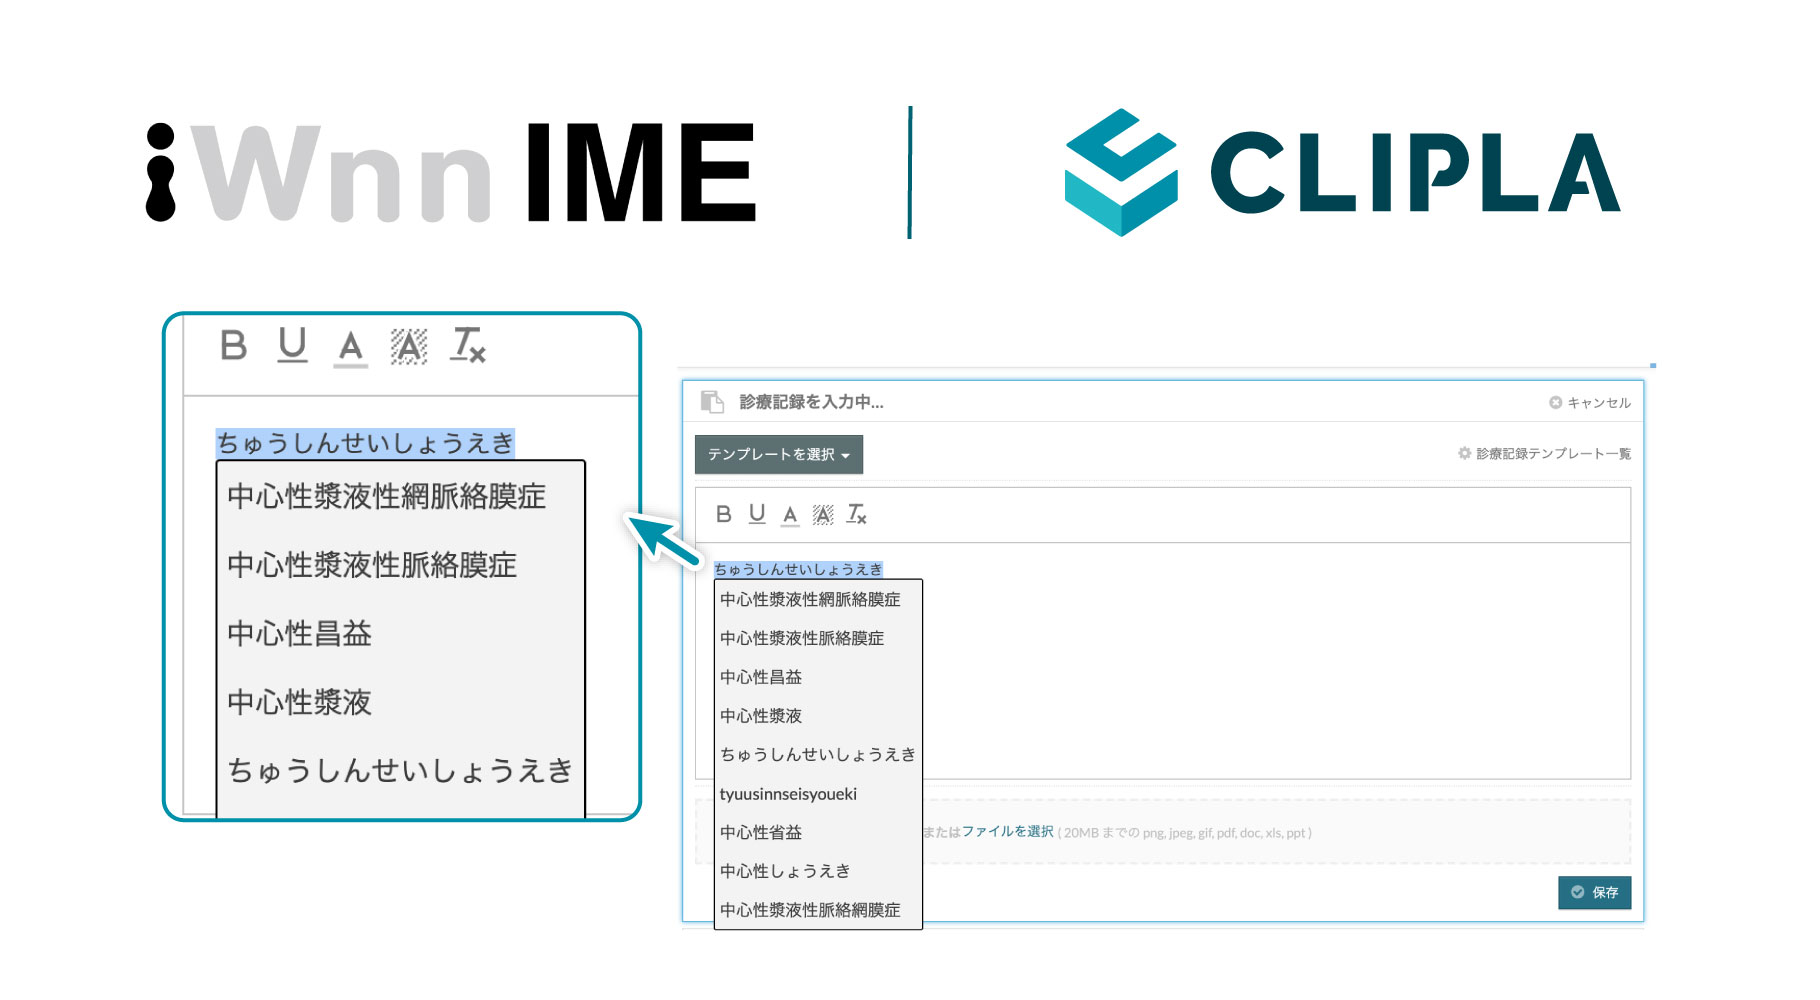 クラウド電子カルテ Clipla の文字入力支援にオムロンソフトウェアの Iwnn Ime For Web を採用 株式会社クリプラ